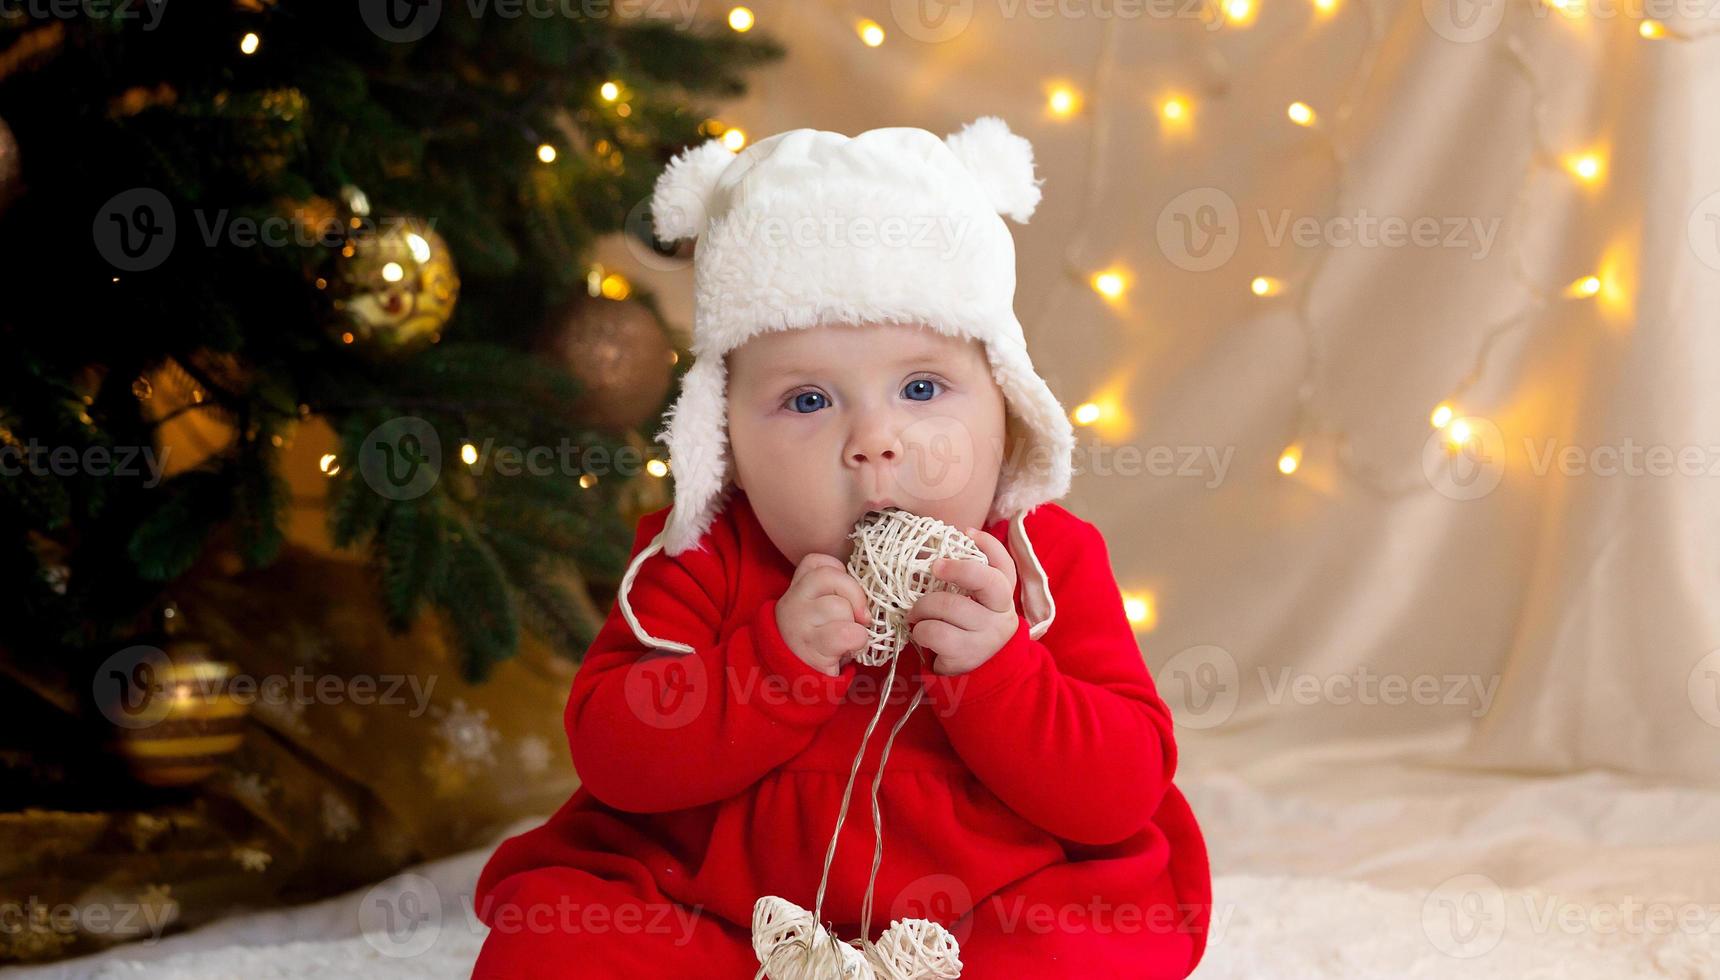 Noël enfant regardant la caméra et tenant une guirlande avec des coeurs photo